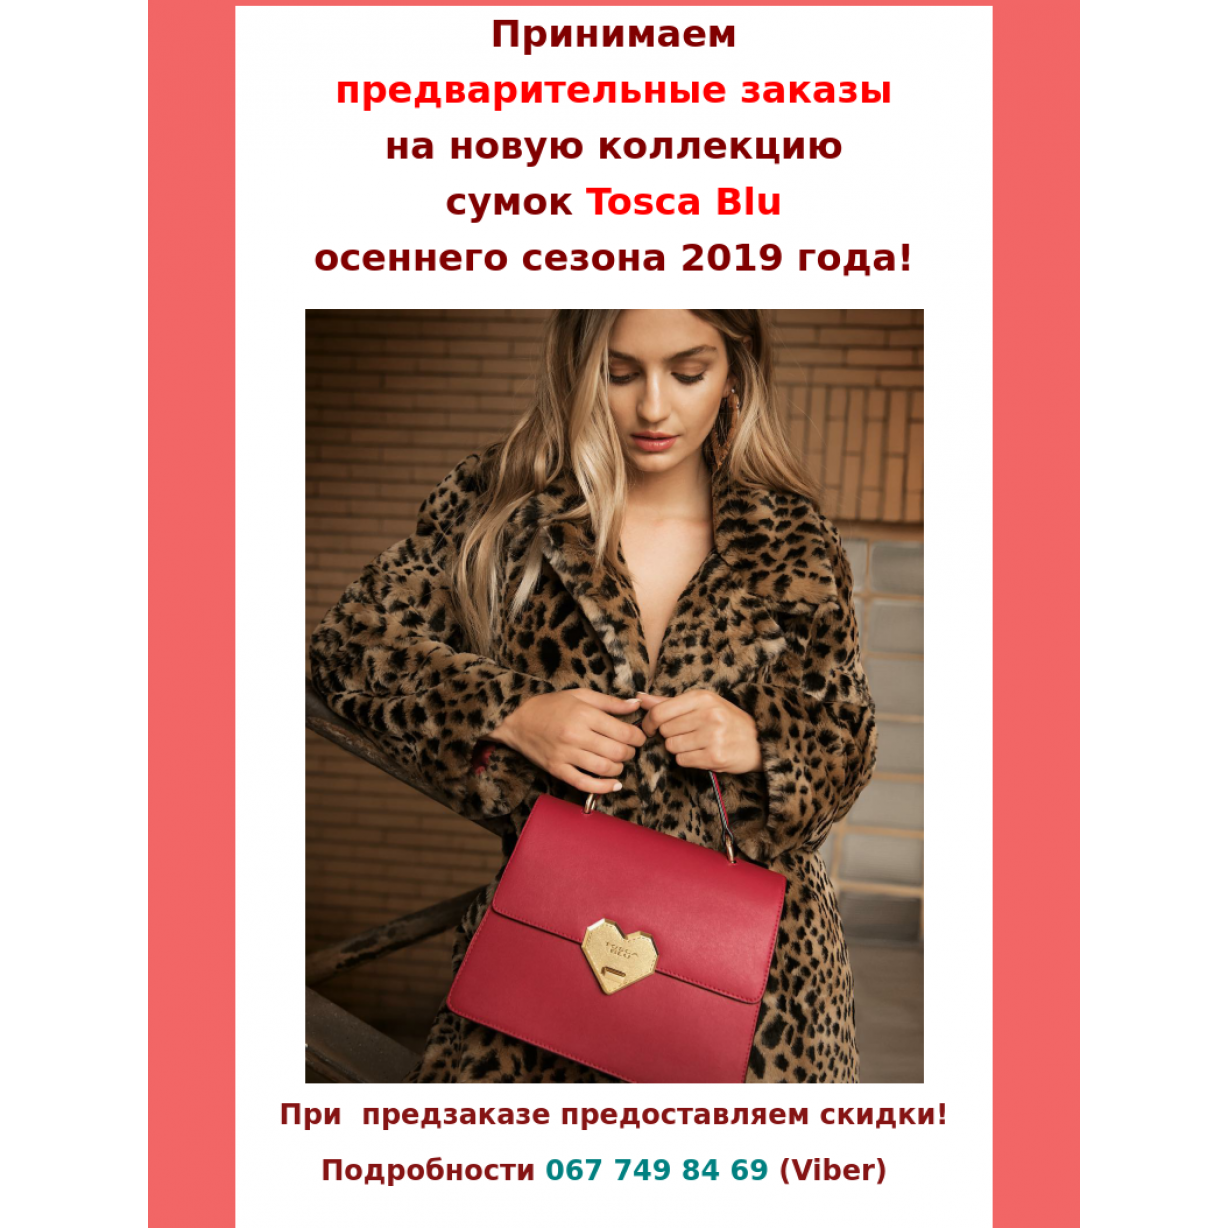 Замовлення осінньої колекції сумок Tosca Blu 2019-2020 р.р.!